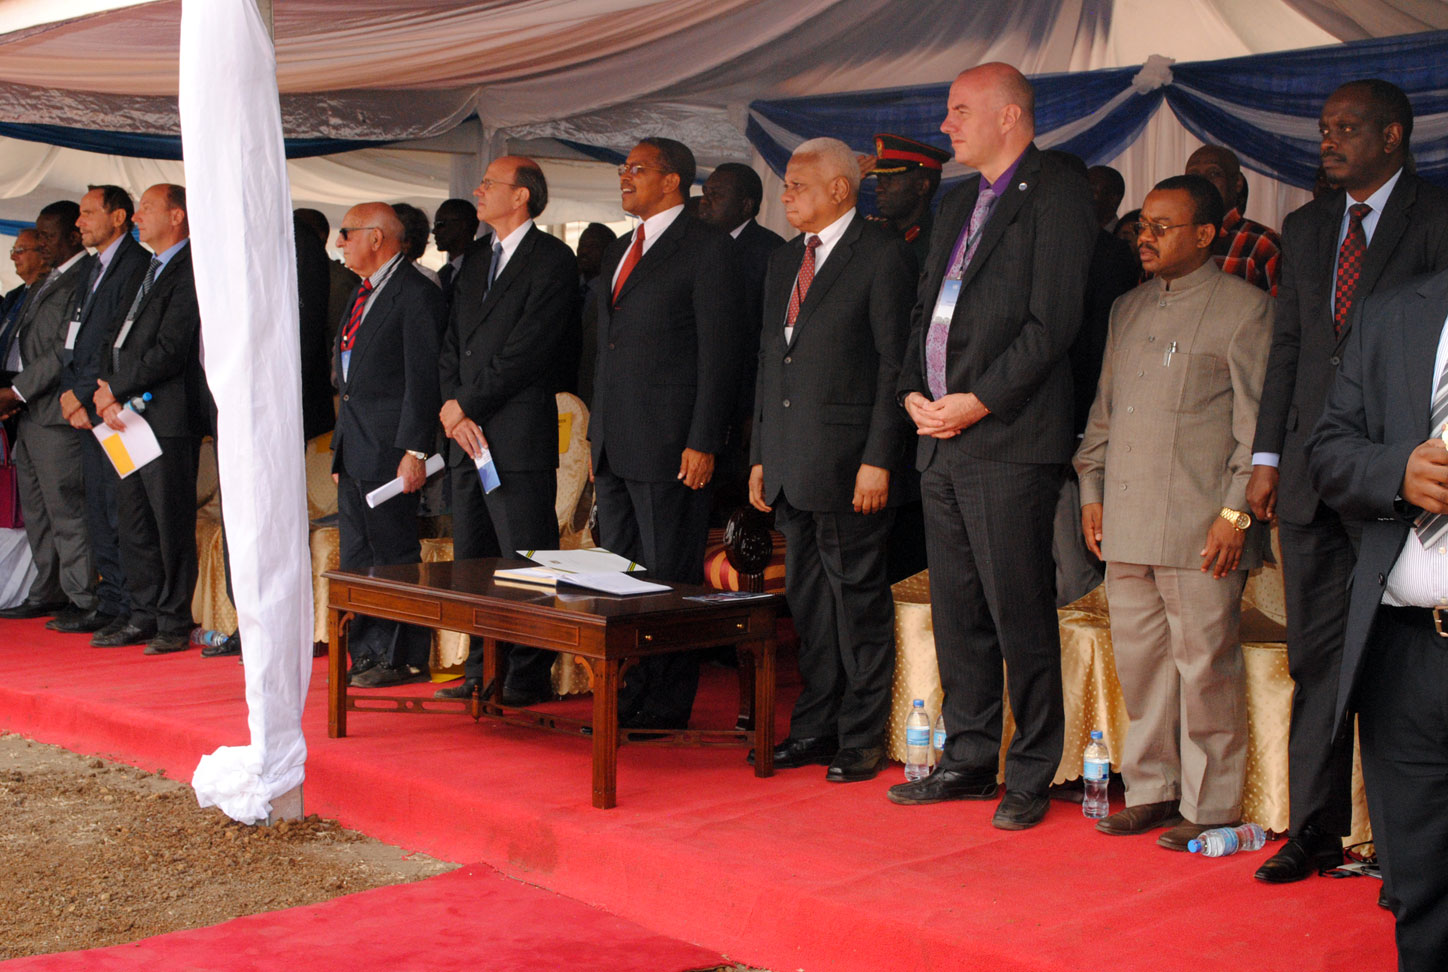 Nj. e. predsednik Tanzanije Kikwete zajedno sa visokim zvaničnicima stoju na intoniranju himne Tanzanije.